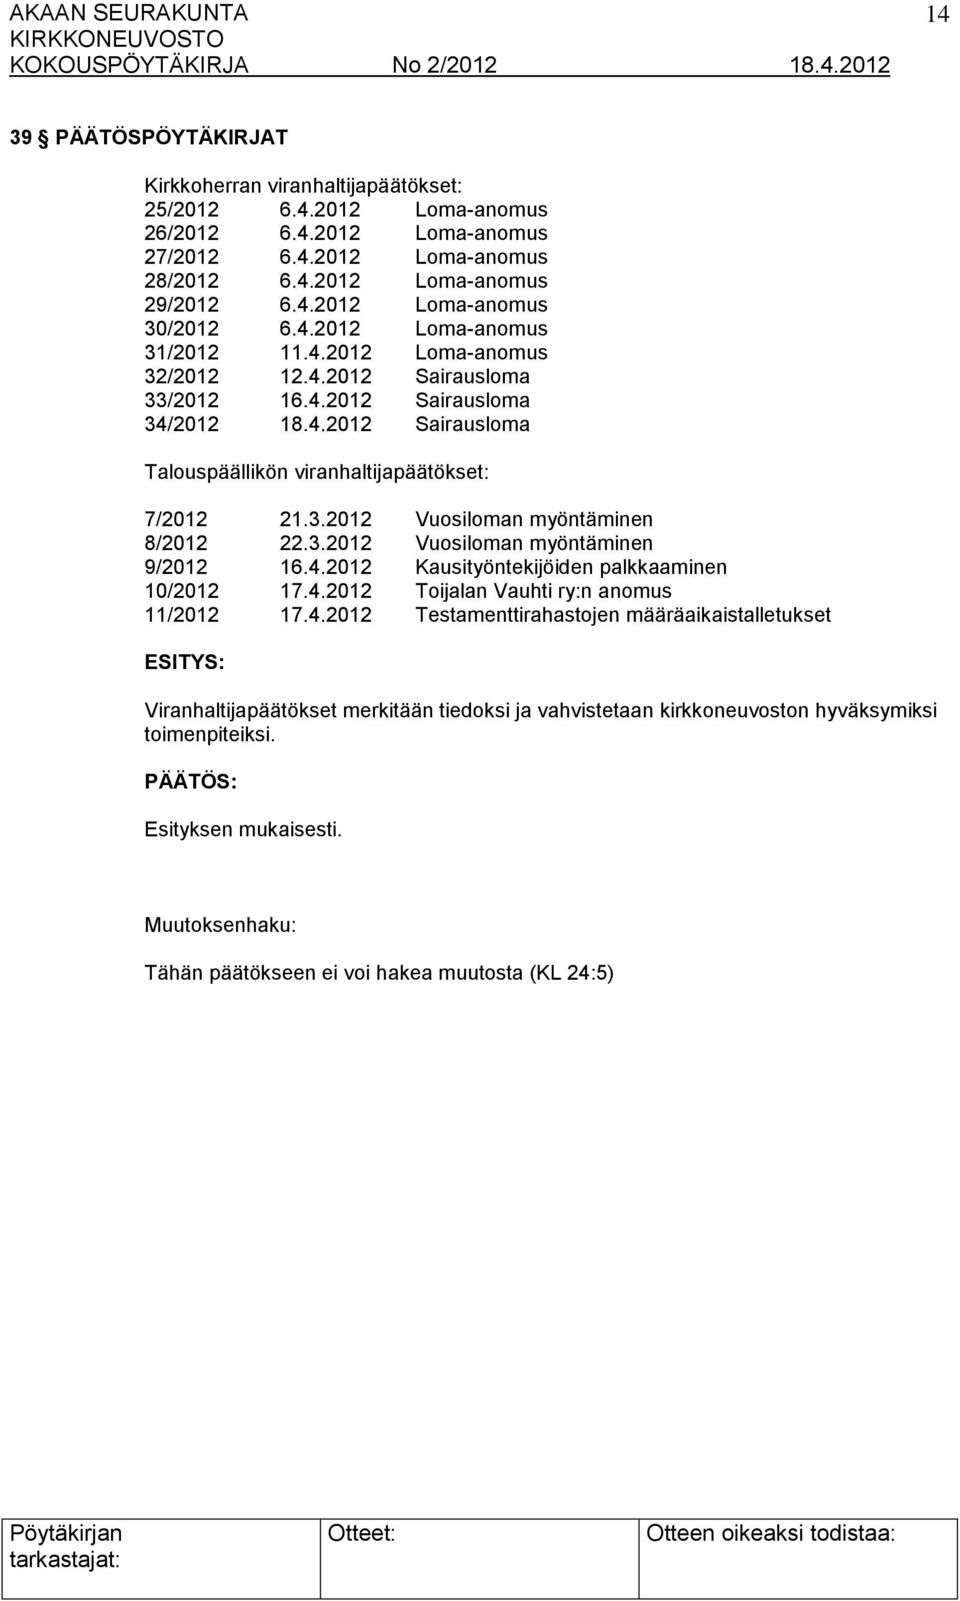 3.2012 Vuosiloman myöntäminen 9/2012 16.4.